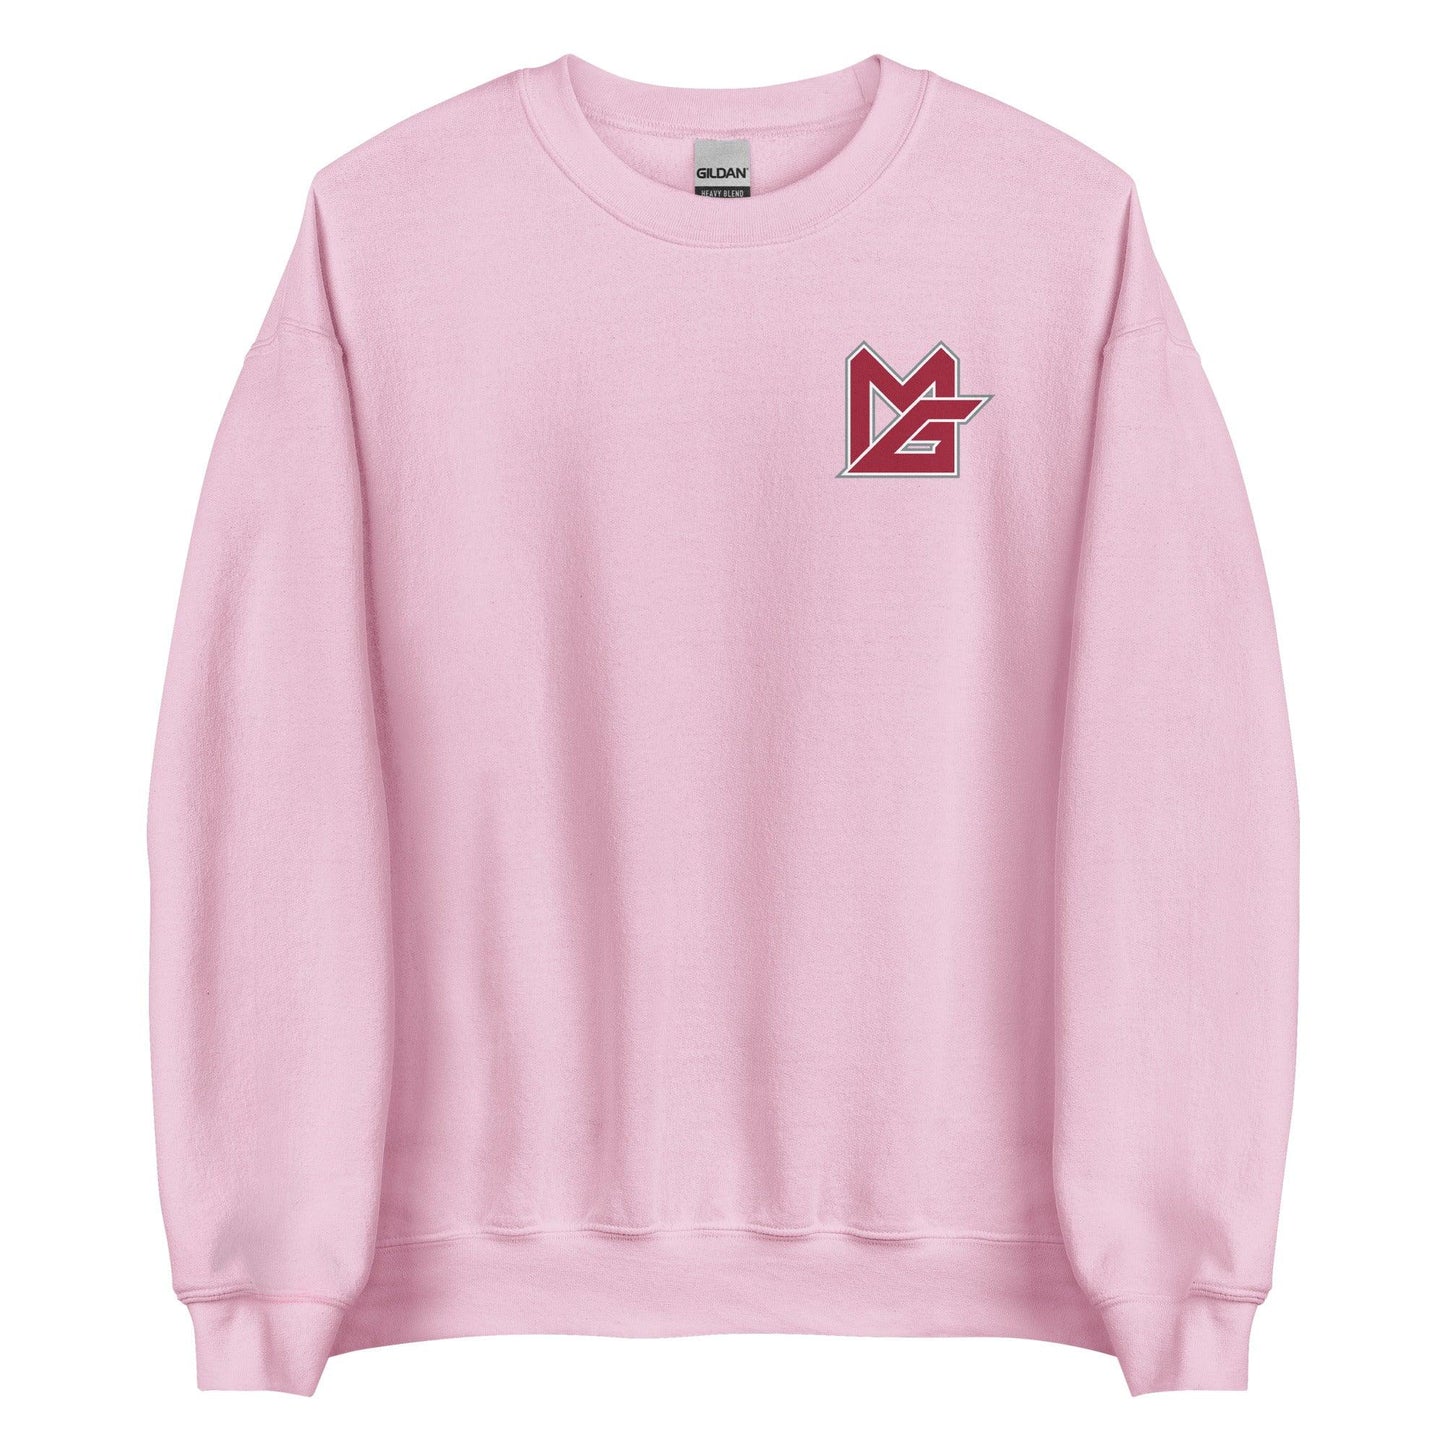 Monkell Goodwine "MG" Sweatshirt - Fan Arch